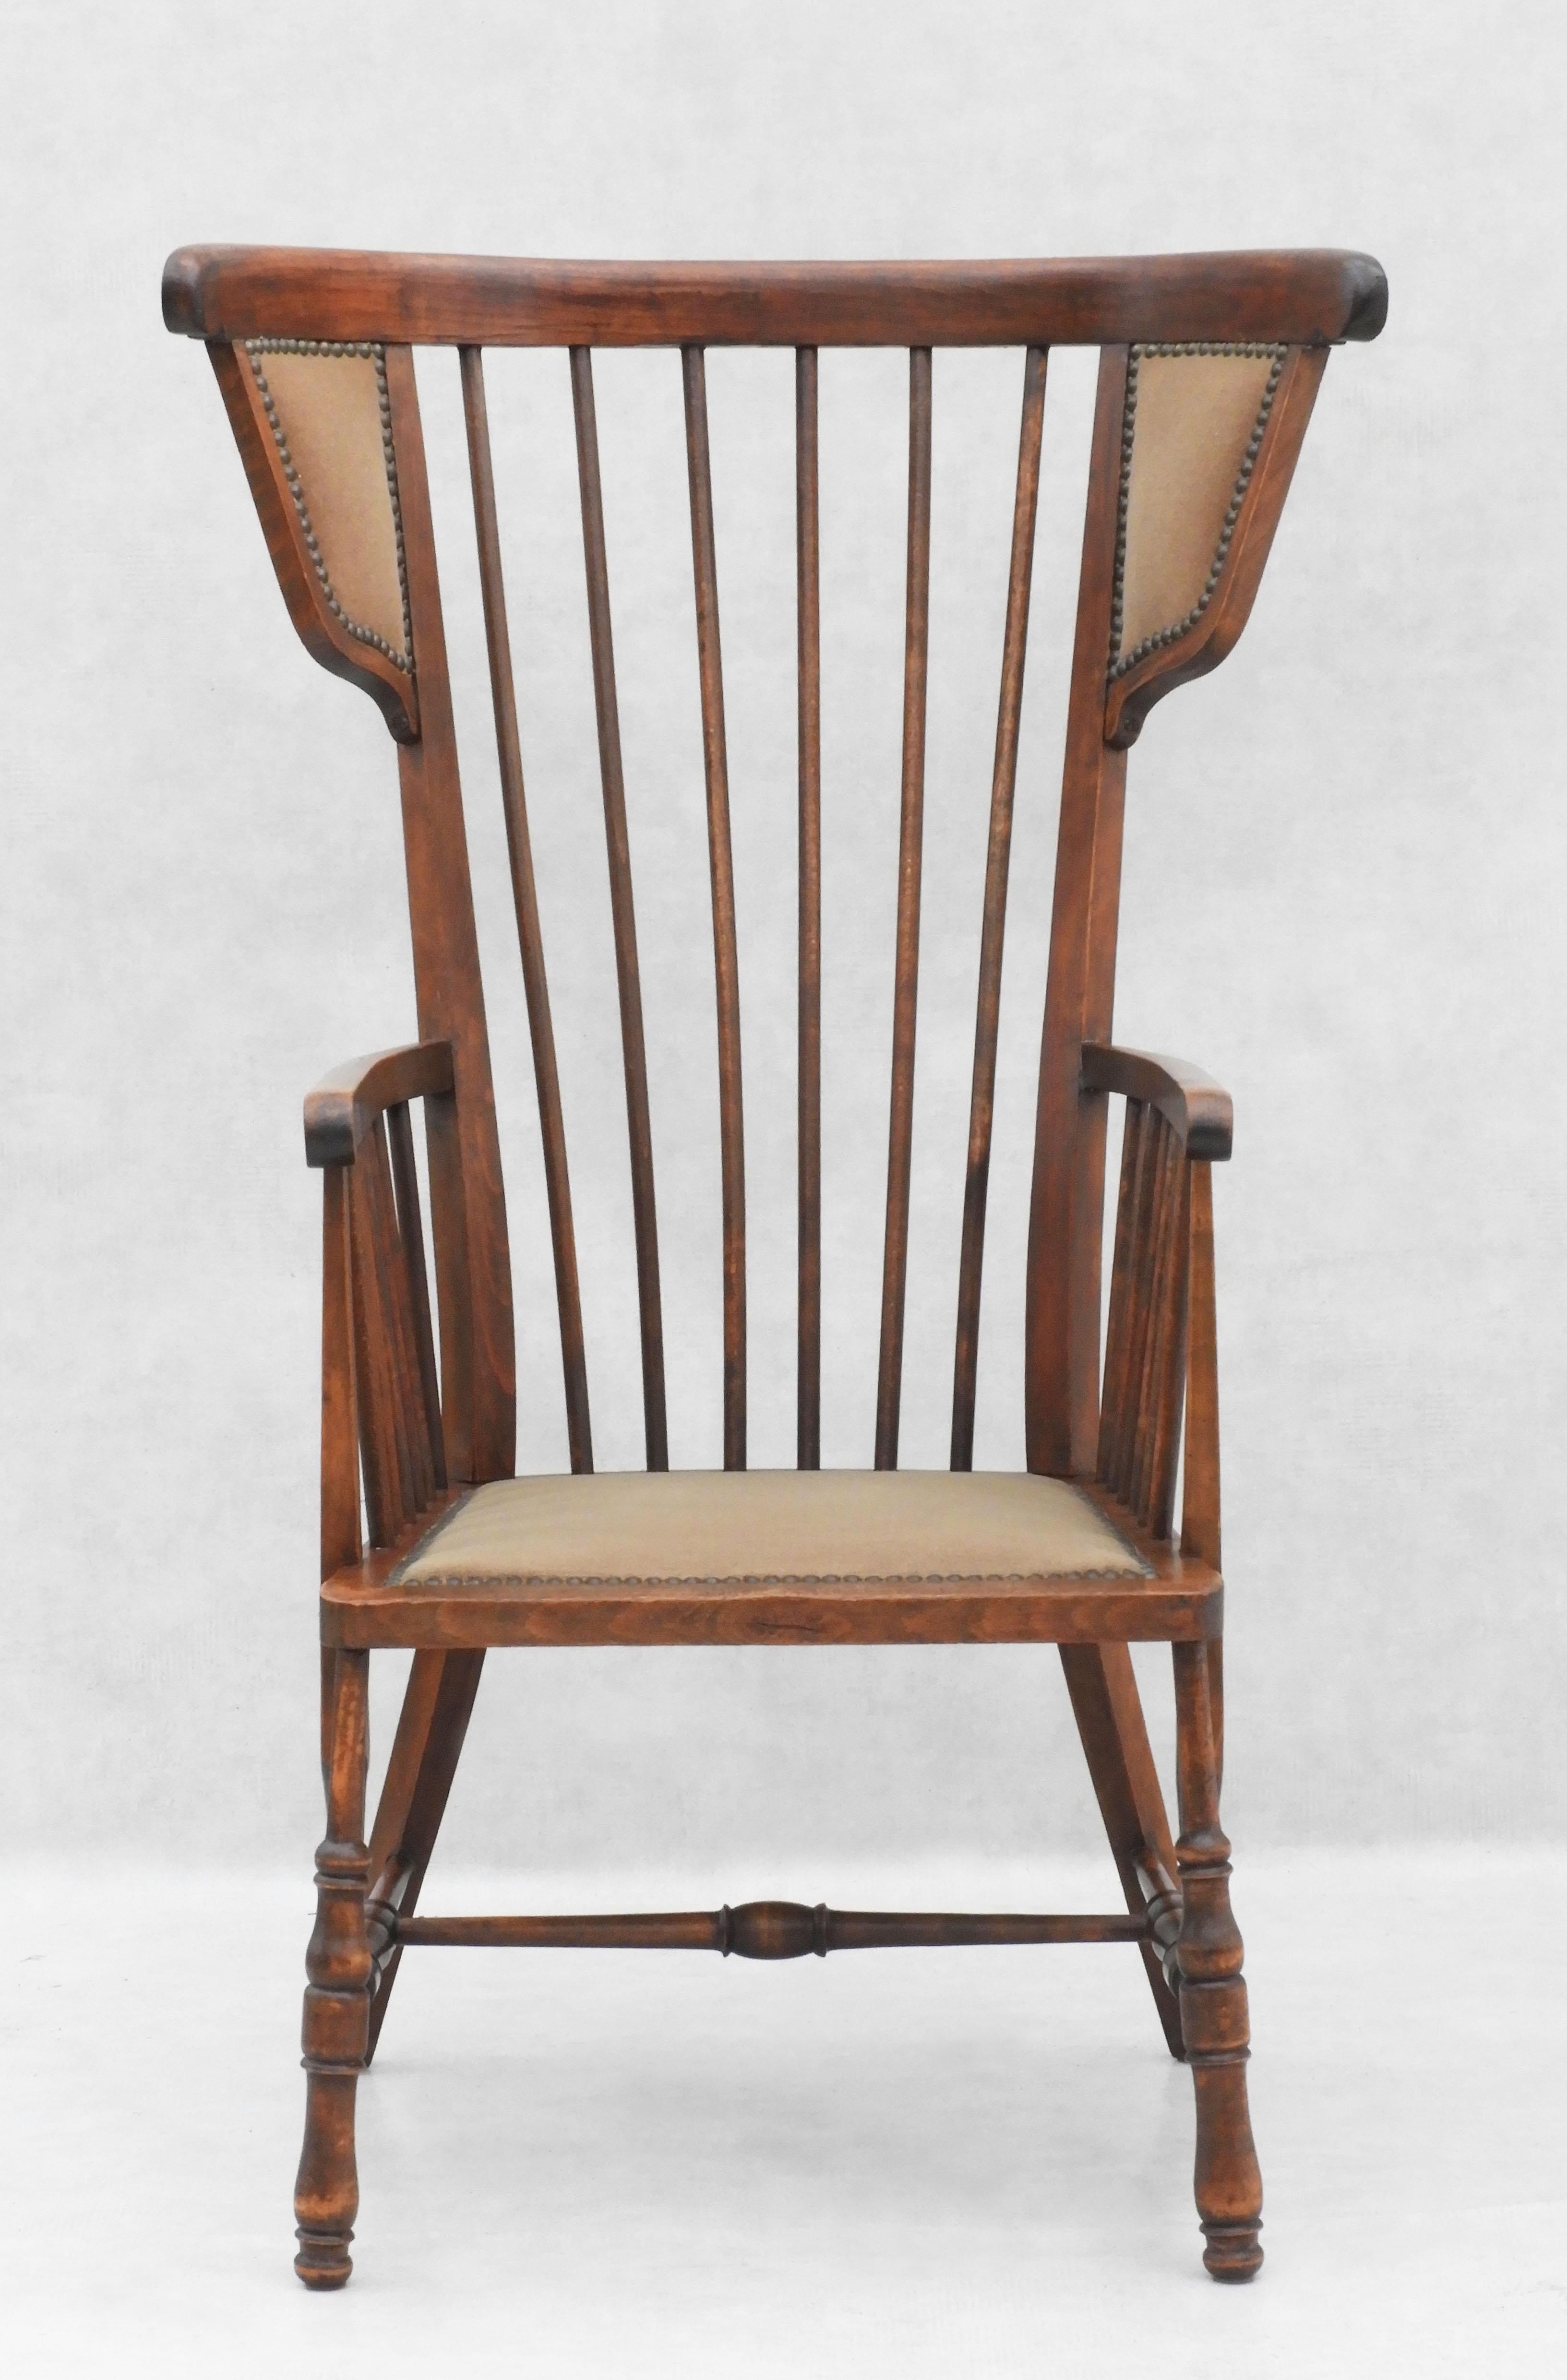 Schön gearbeitete Spindel Holz Flügelrücken Sessel C1900 Frankreich.  Der ungewöhnliche Stuhl verfügt über eine gewölbte Kopfstütze und Armlehnen, eine Spindelrückenstütze und Seitenteile sowie eine gepolsterte Sitzfläche und Rückenlehnen in einem